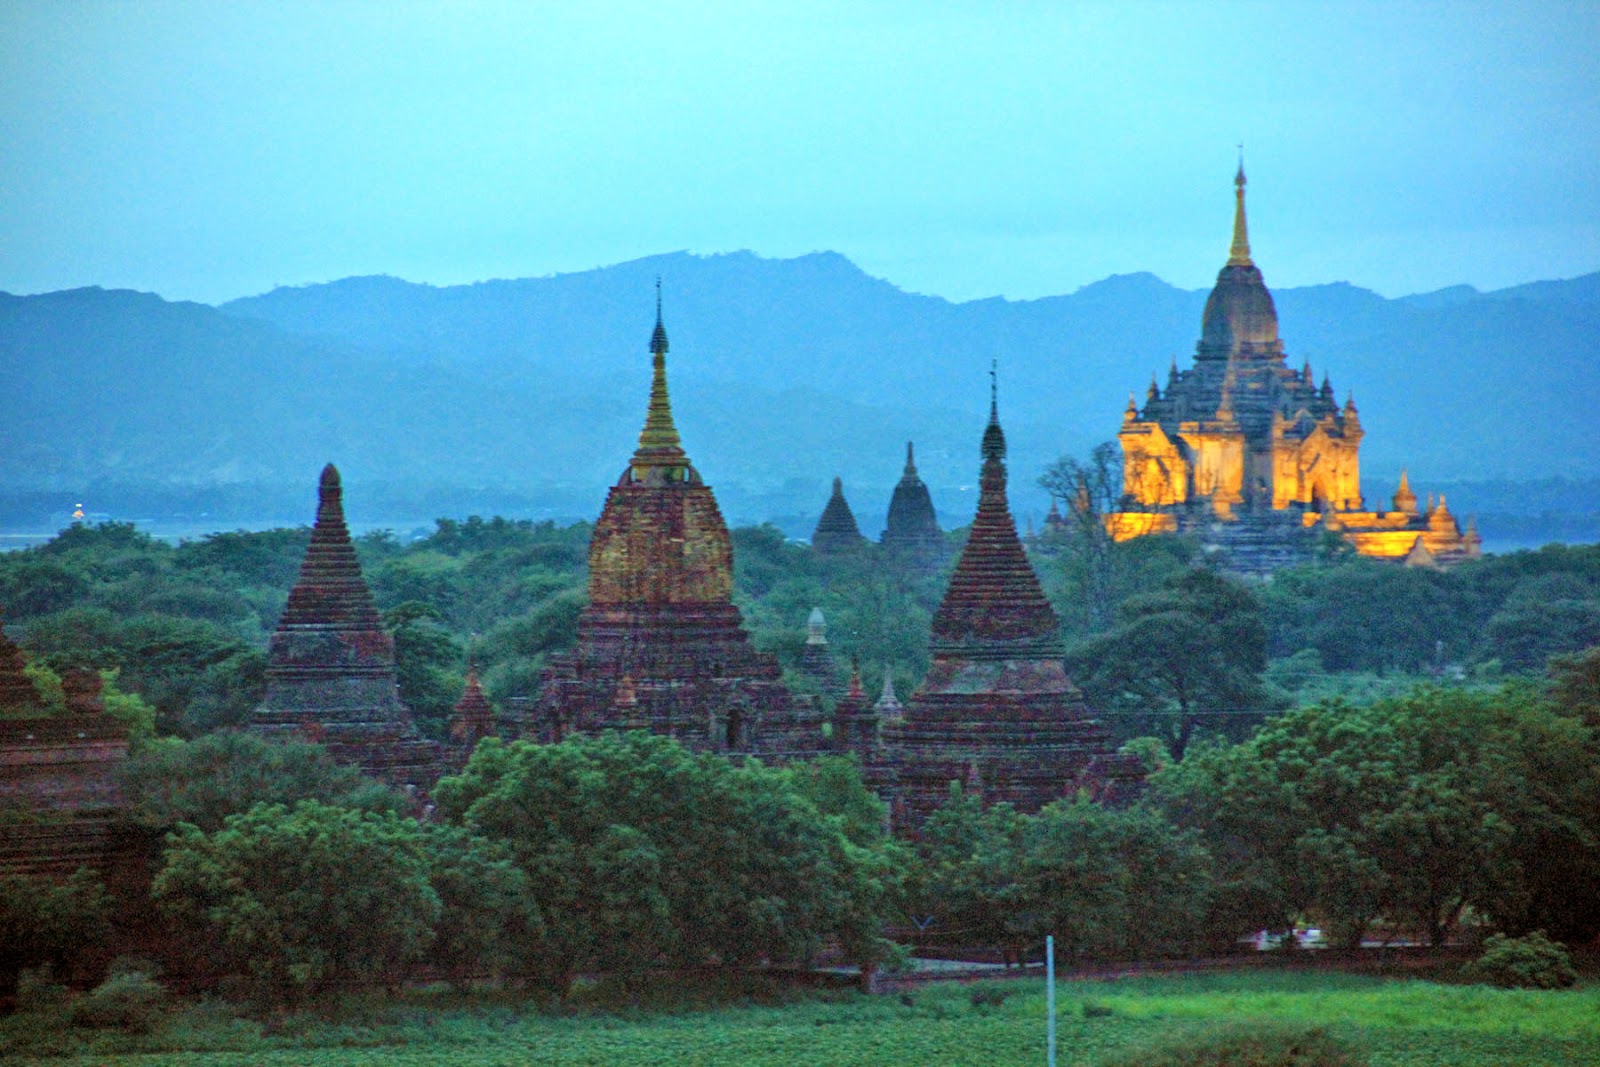 cosas que hacer en birmania, birmania, cosas que hacer, mandalay, shwedagon, asia, tourism, turismo, viaje, viajar, trip, travel, takemysecrets